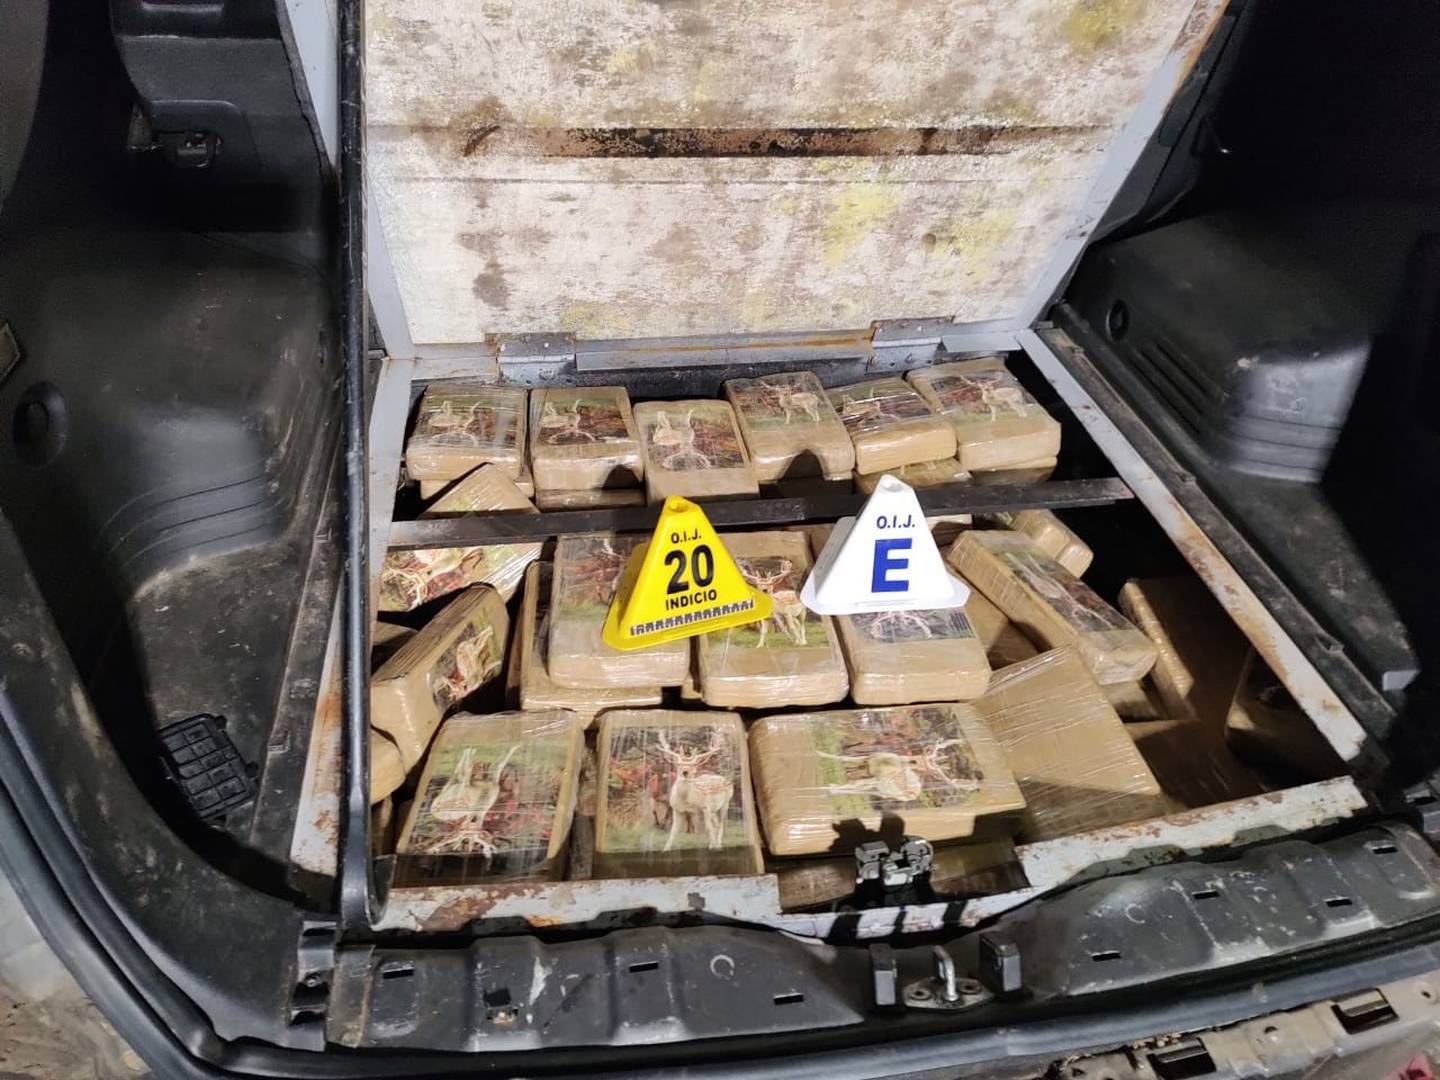 Los paquetes con droga estaban ocultos en un compartimiento en el piso del carro. Foto OIJ.